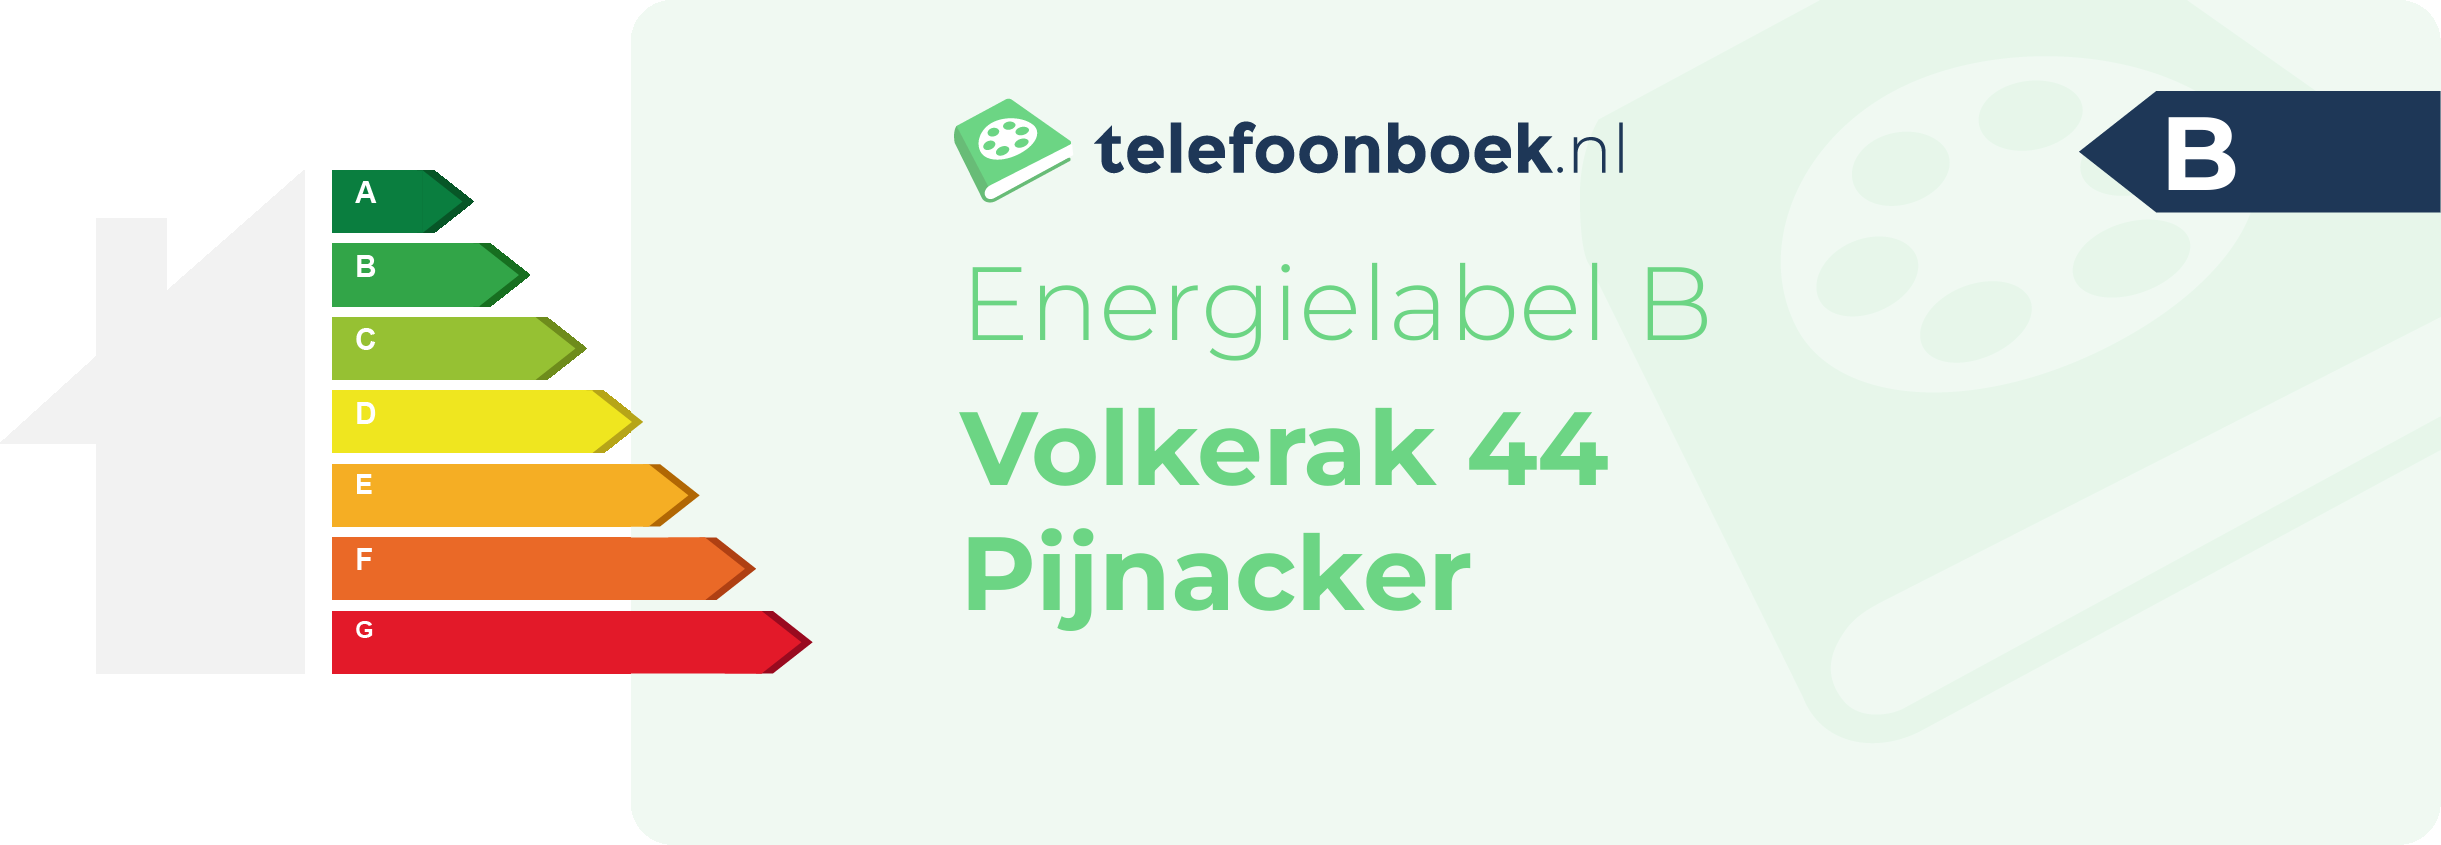 Energielabel Volkerak 44 Pijnacker